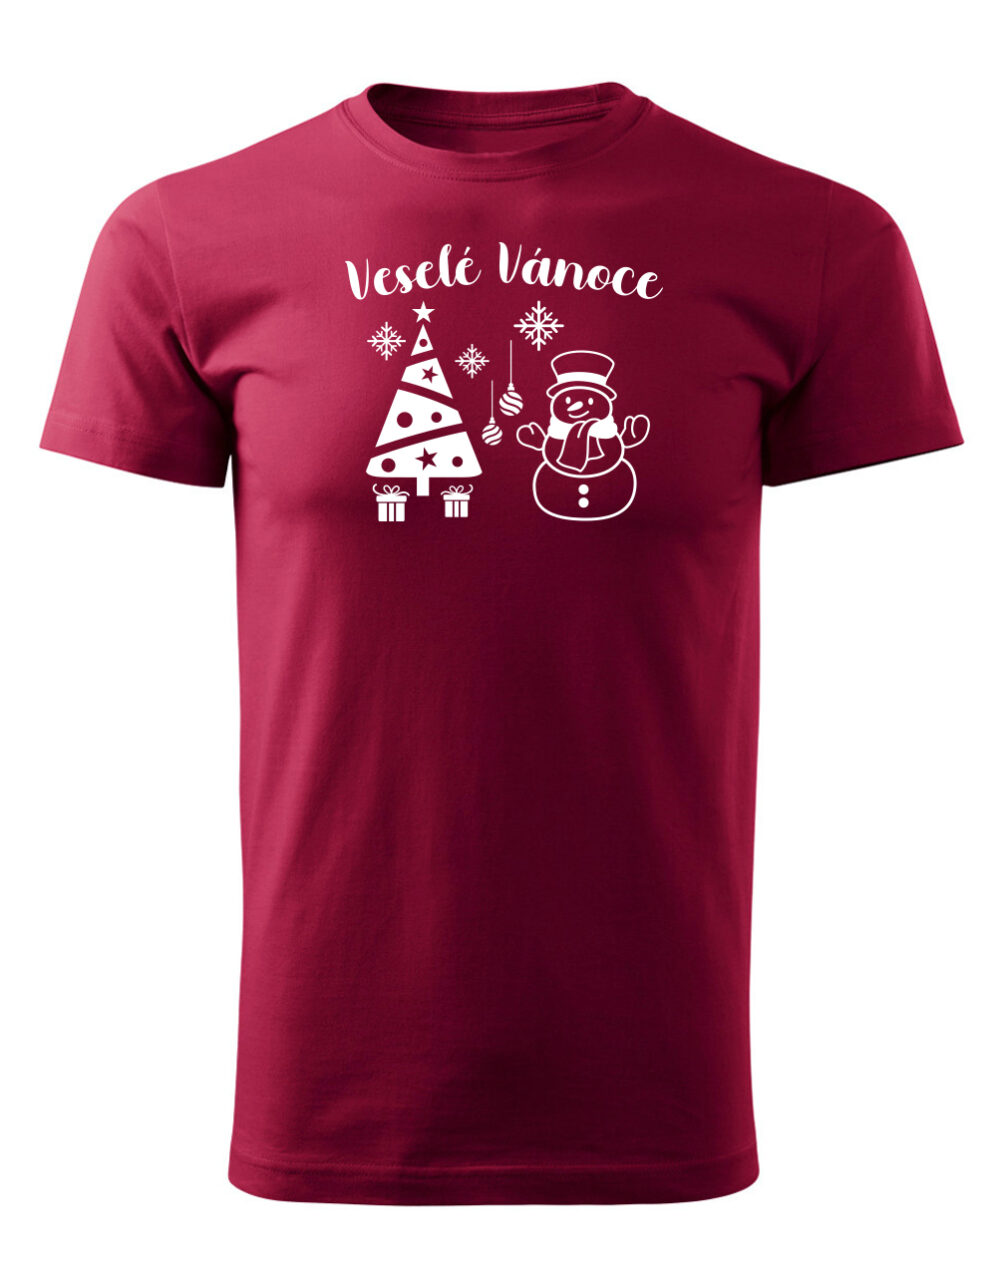 Pánské tričko s potiskem Veselé vánoce granátová